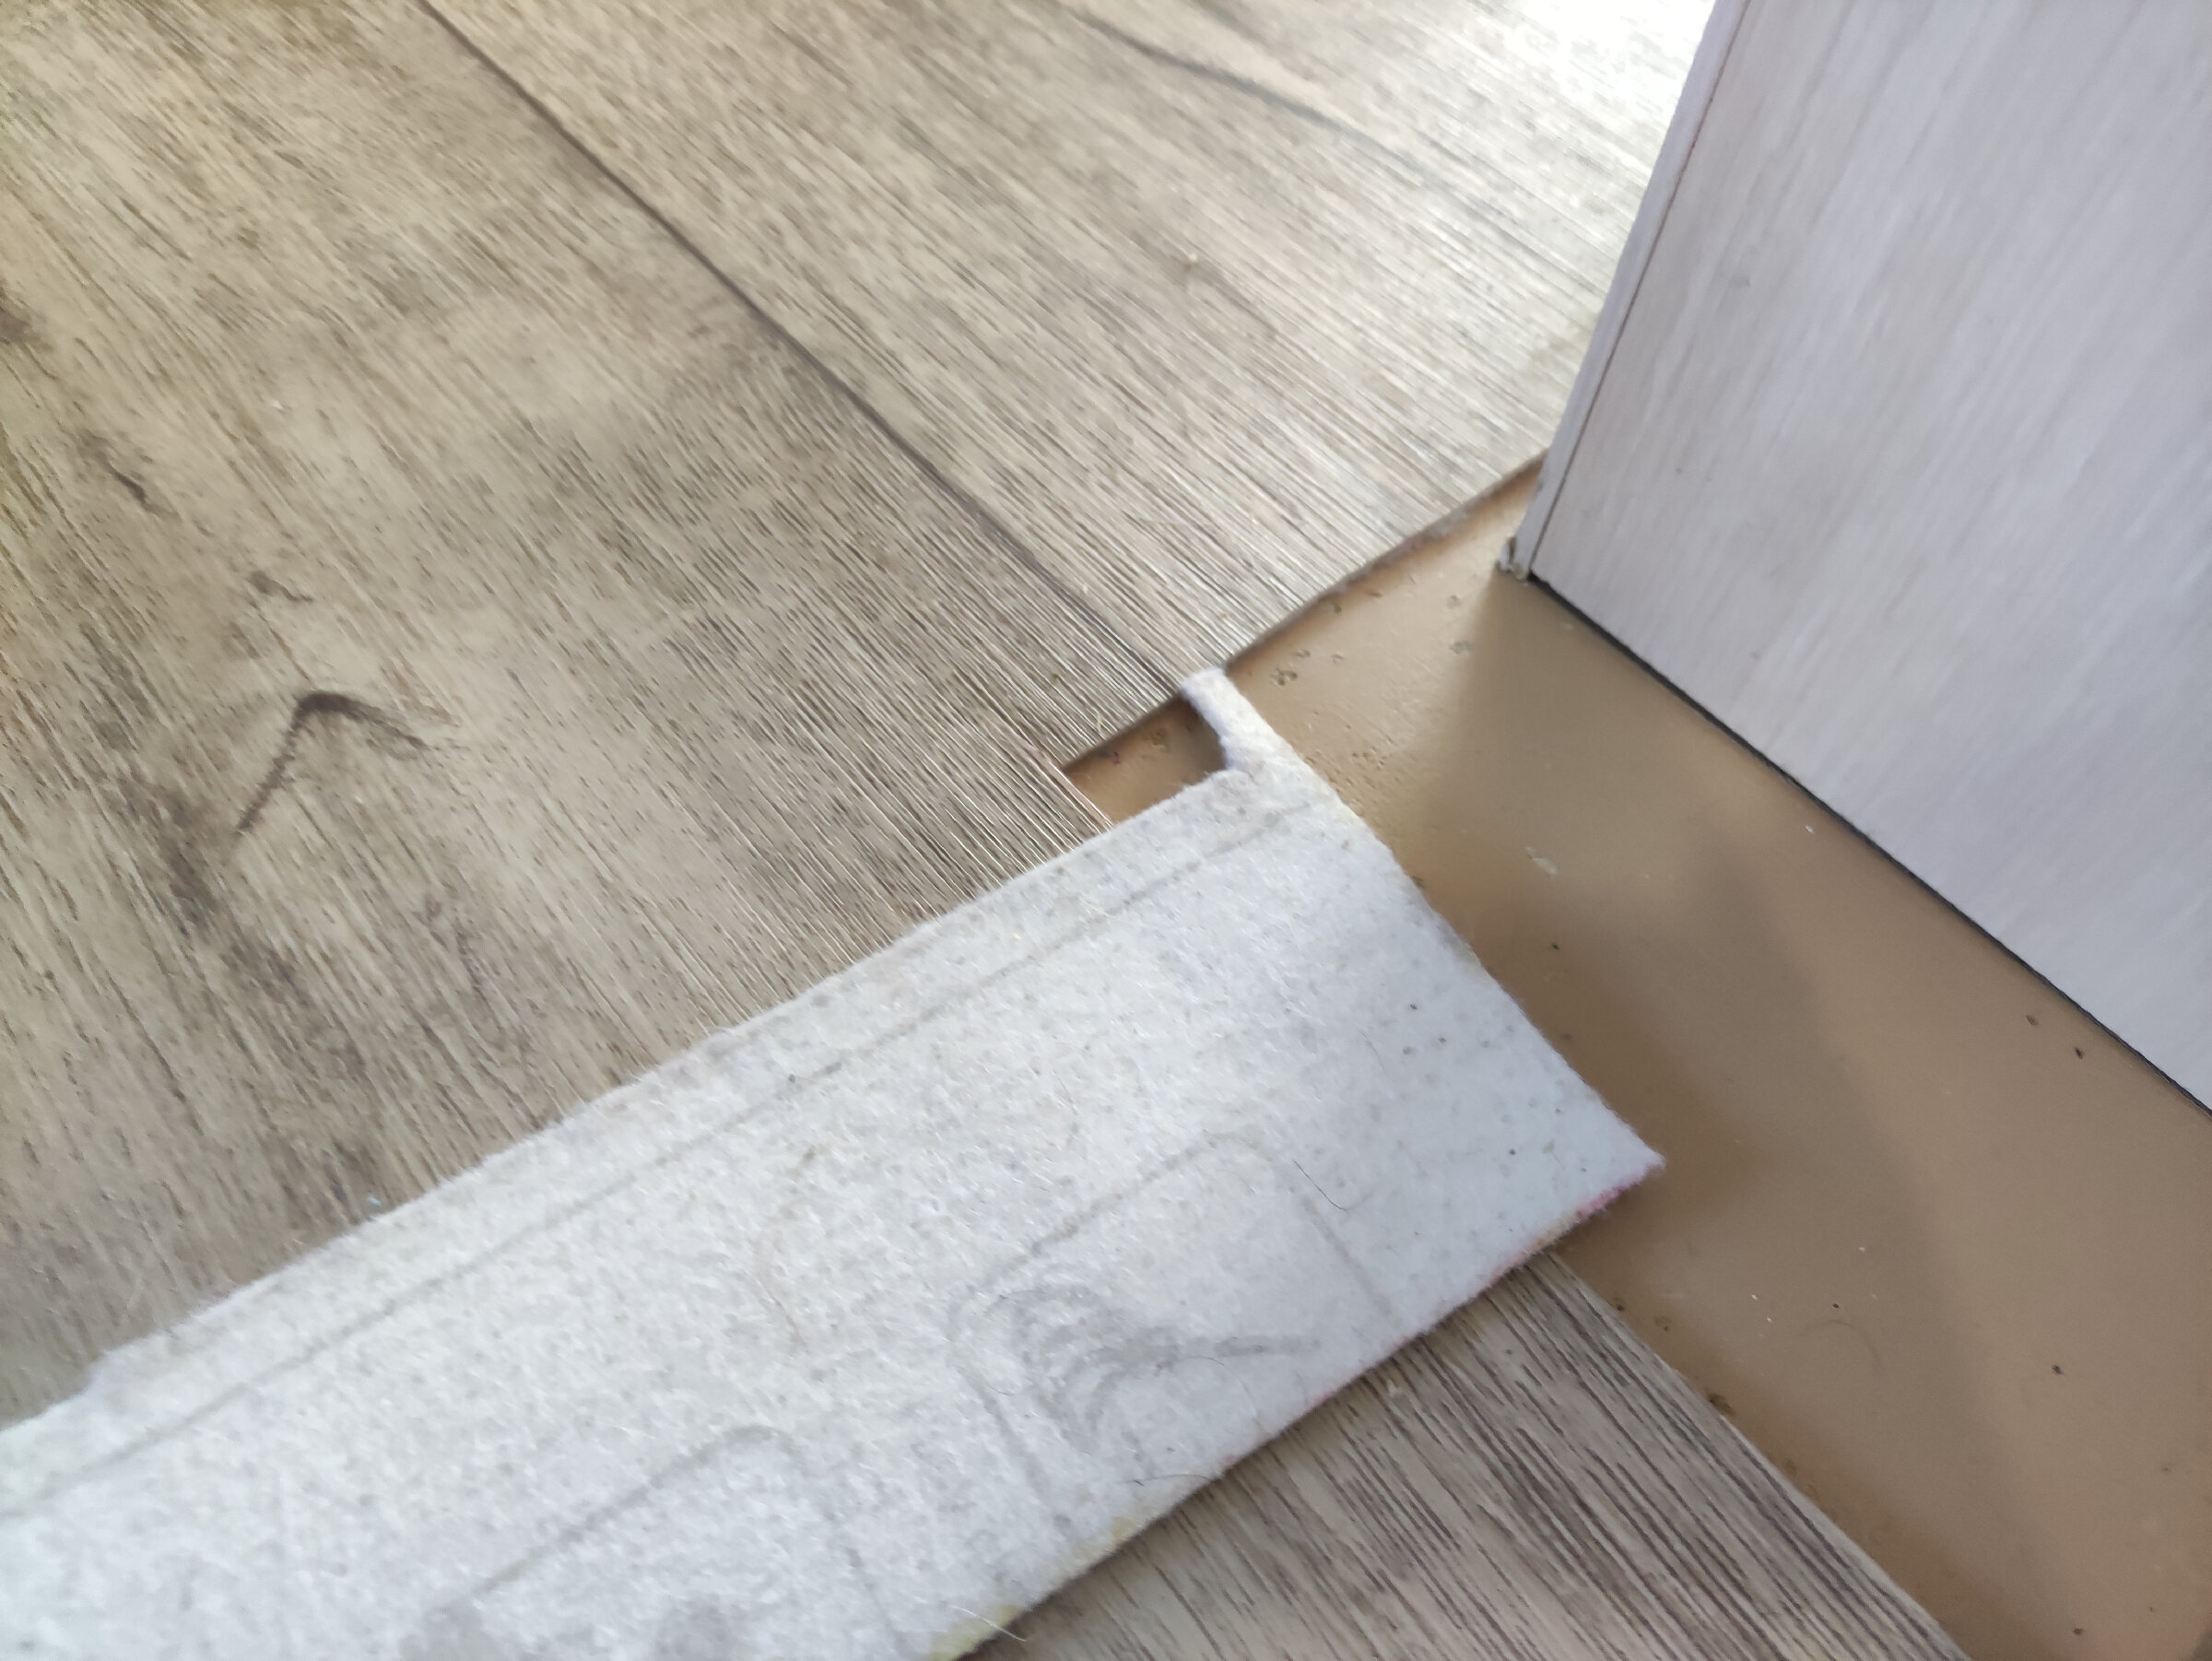 Финский способ идеально ровно вырезать линолеум/ковровое покрытие по углам и вокруг труб: нужен листок бумаги, карандаш и малярка полезные советы,ремонт и строительство